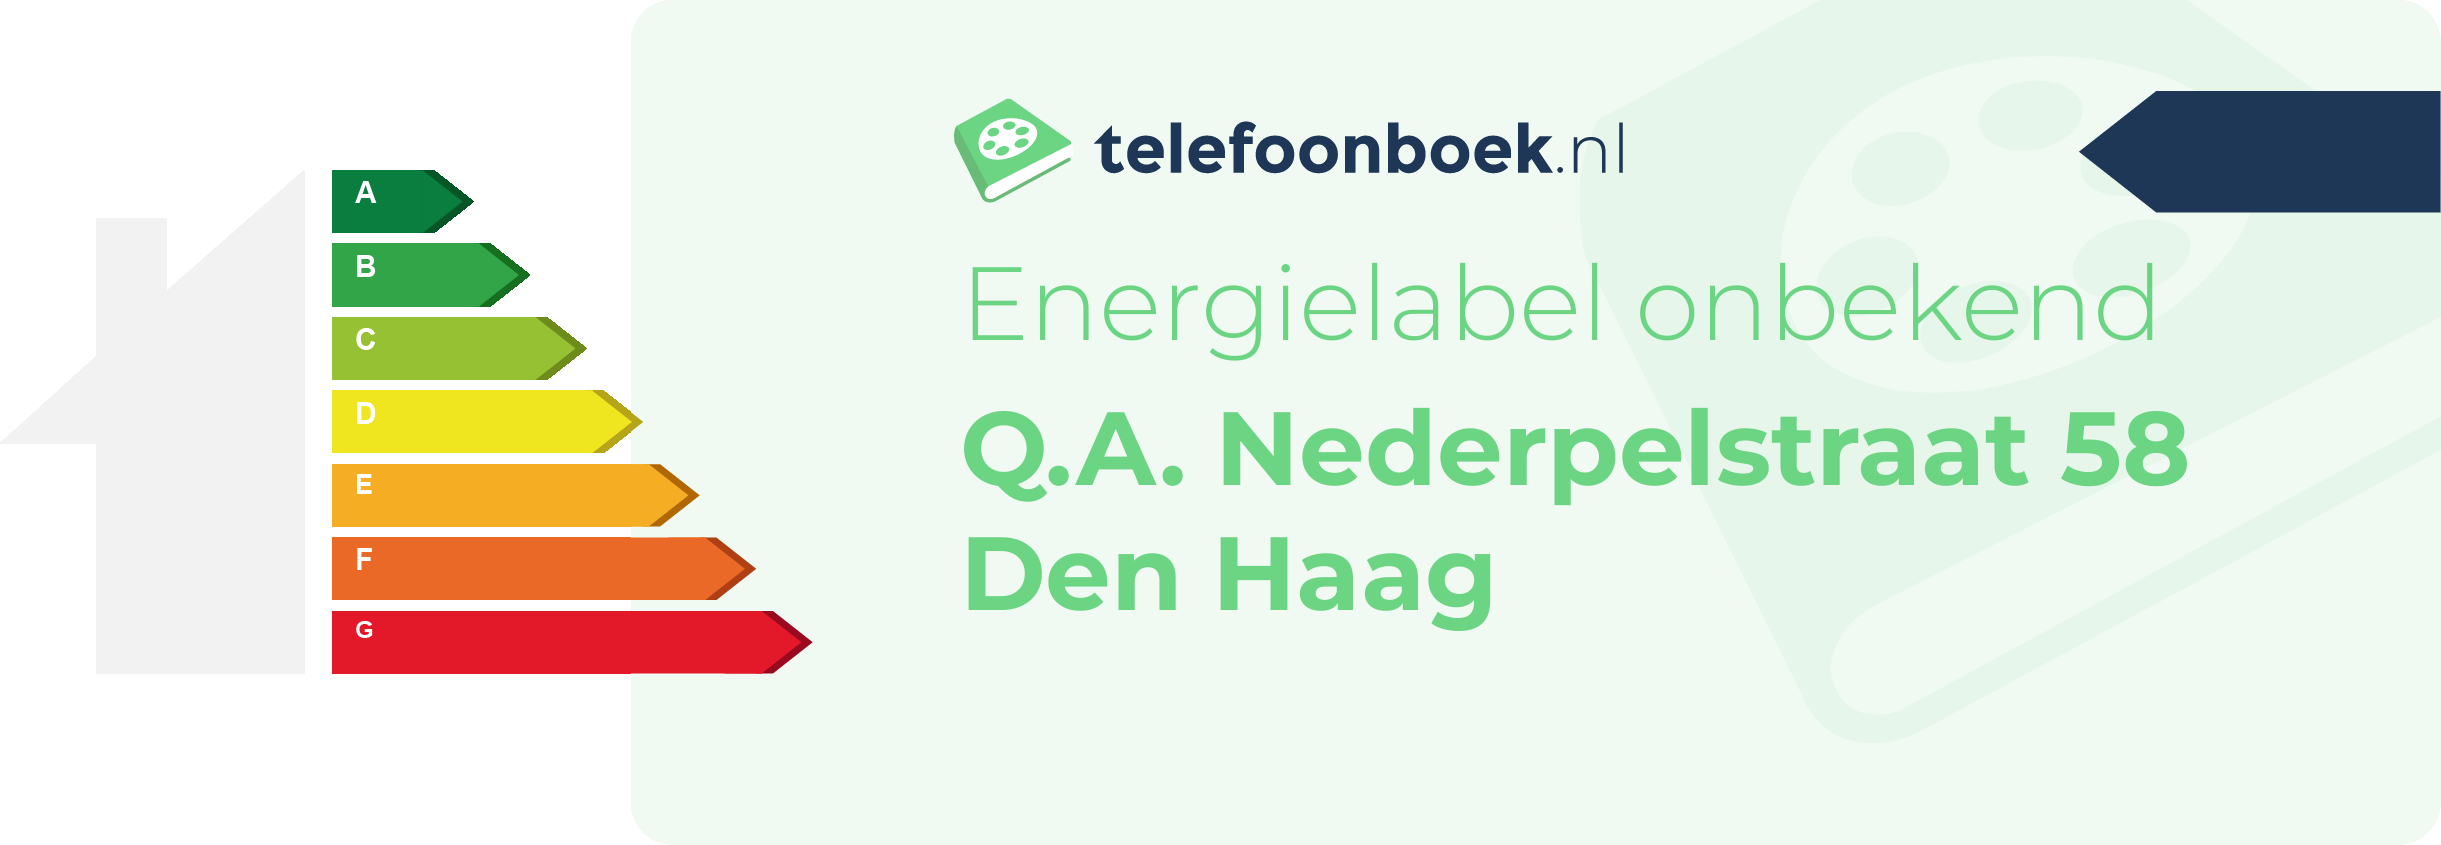 Energielabel Q.A. Nederpelstraat 58 Den Haag